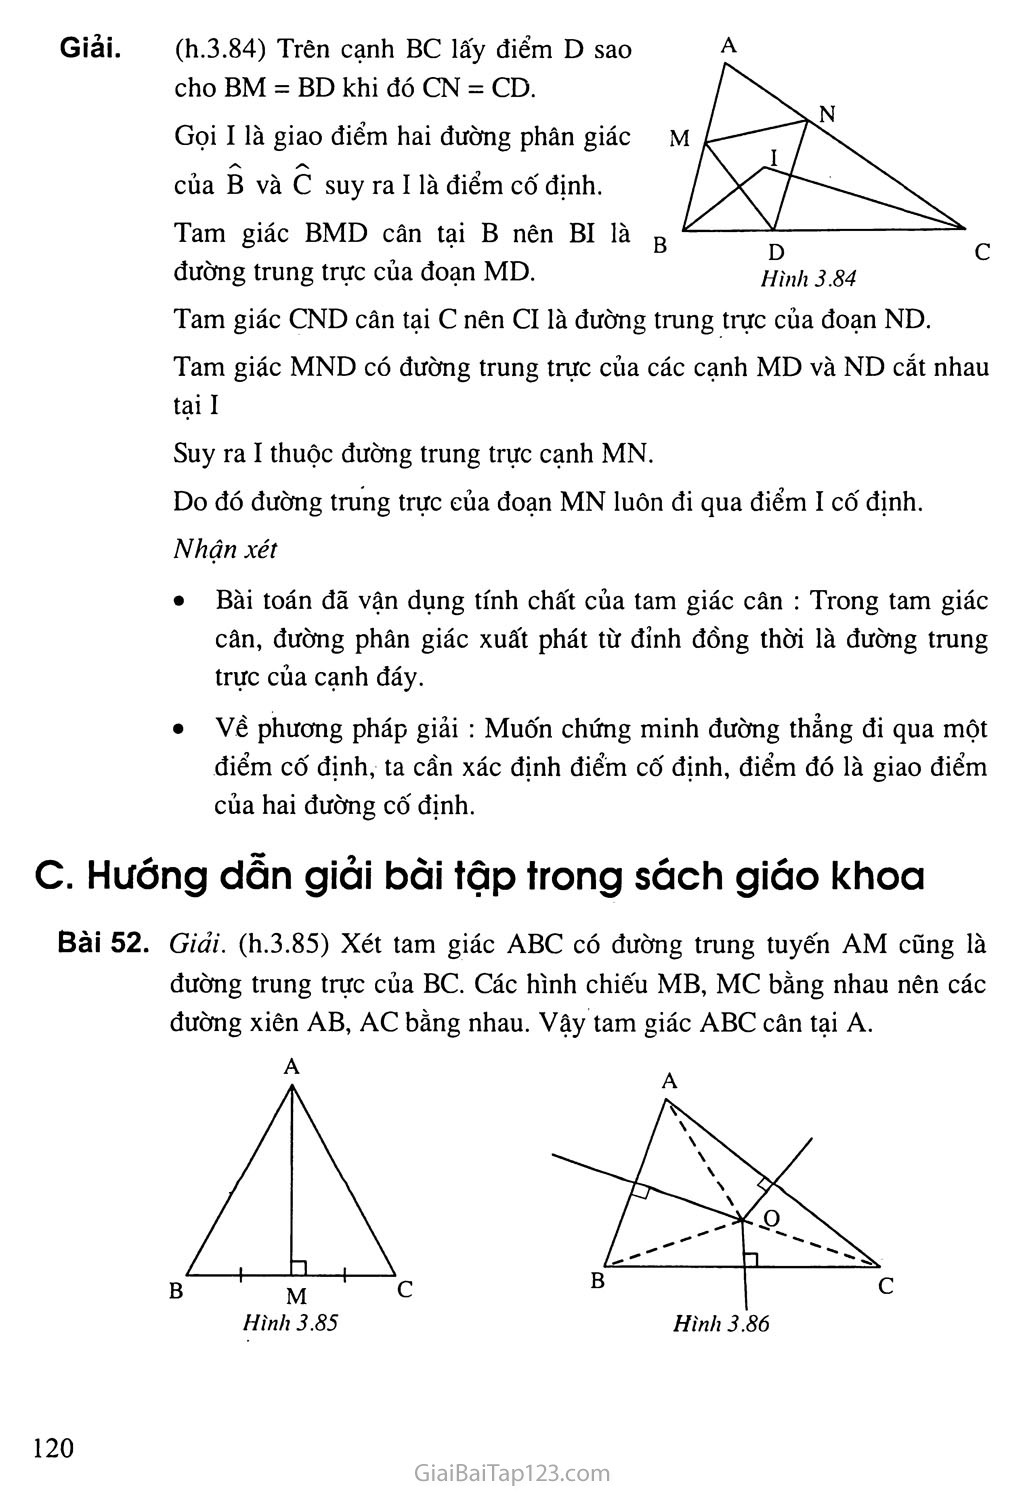 Giải toán 7 Bài 8. Tình hóa học phụ vương đàng trung trực của một tam giác